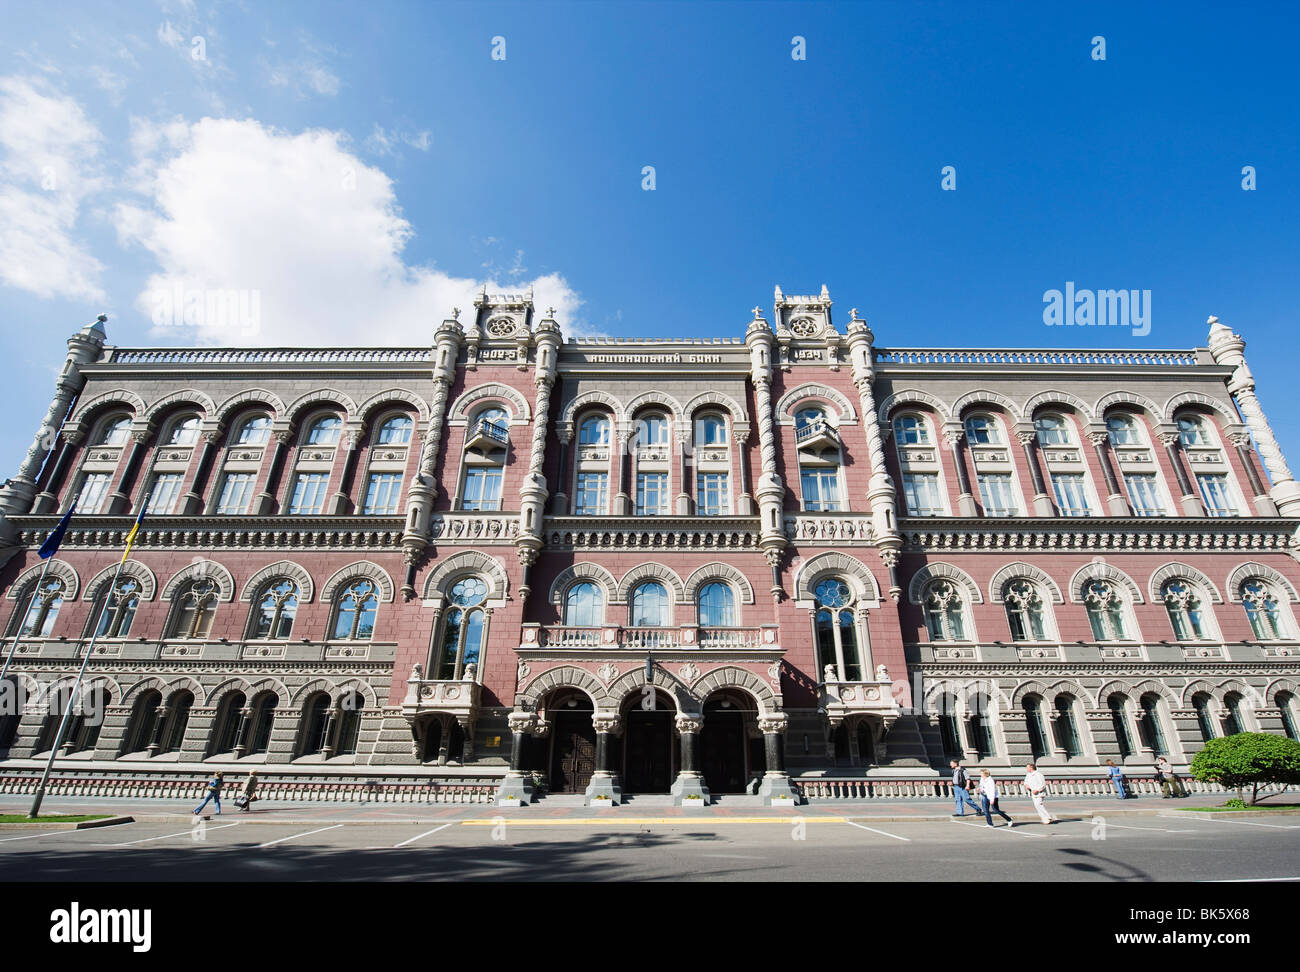 La Banca nazionale di Ucraina edificio, architettura art deco, Kiev, Ucraina, Europa Foto Stock